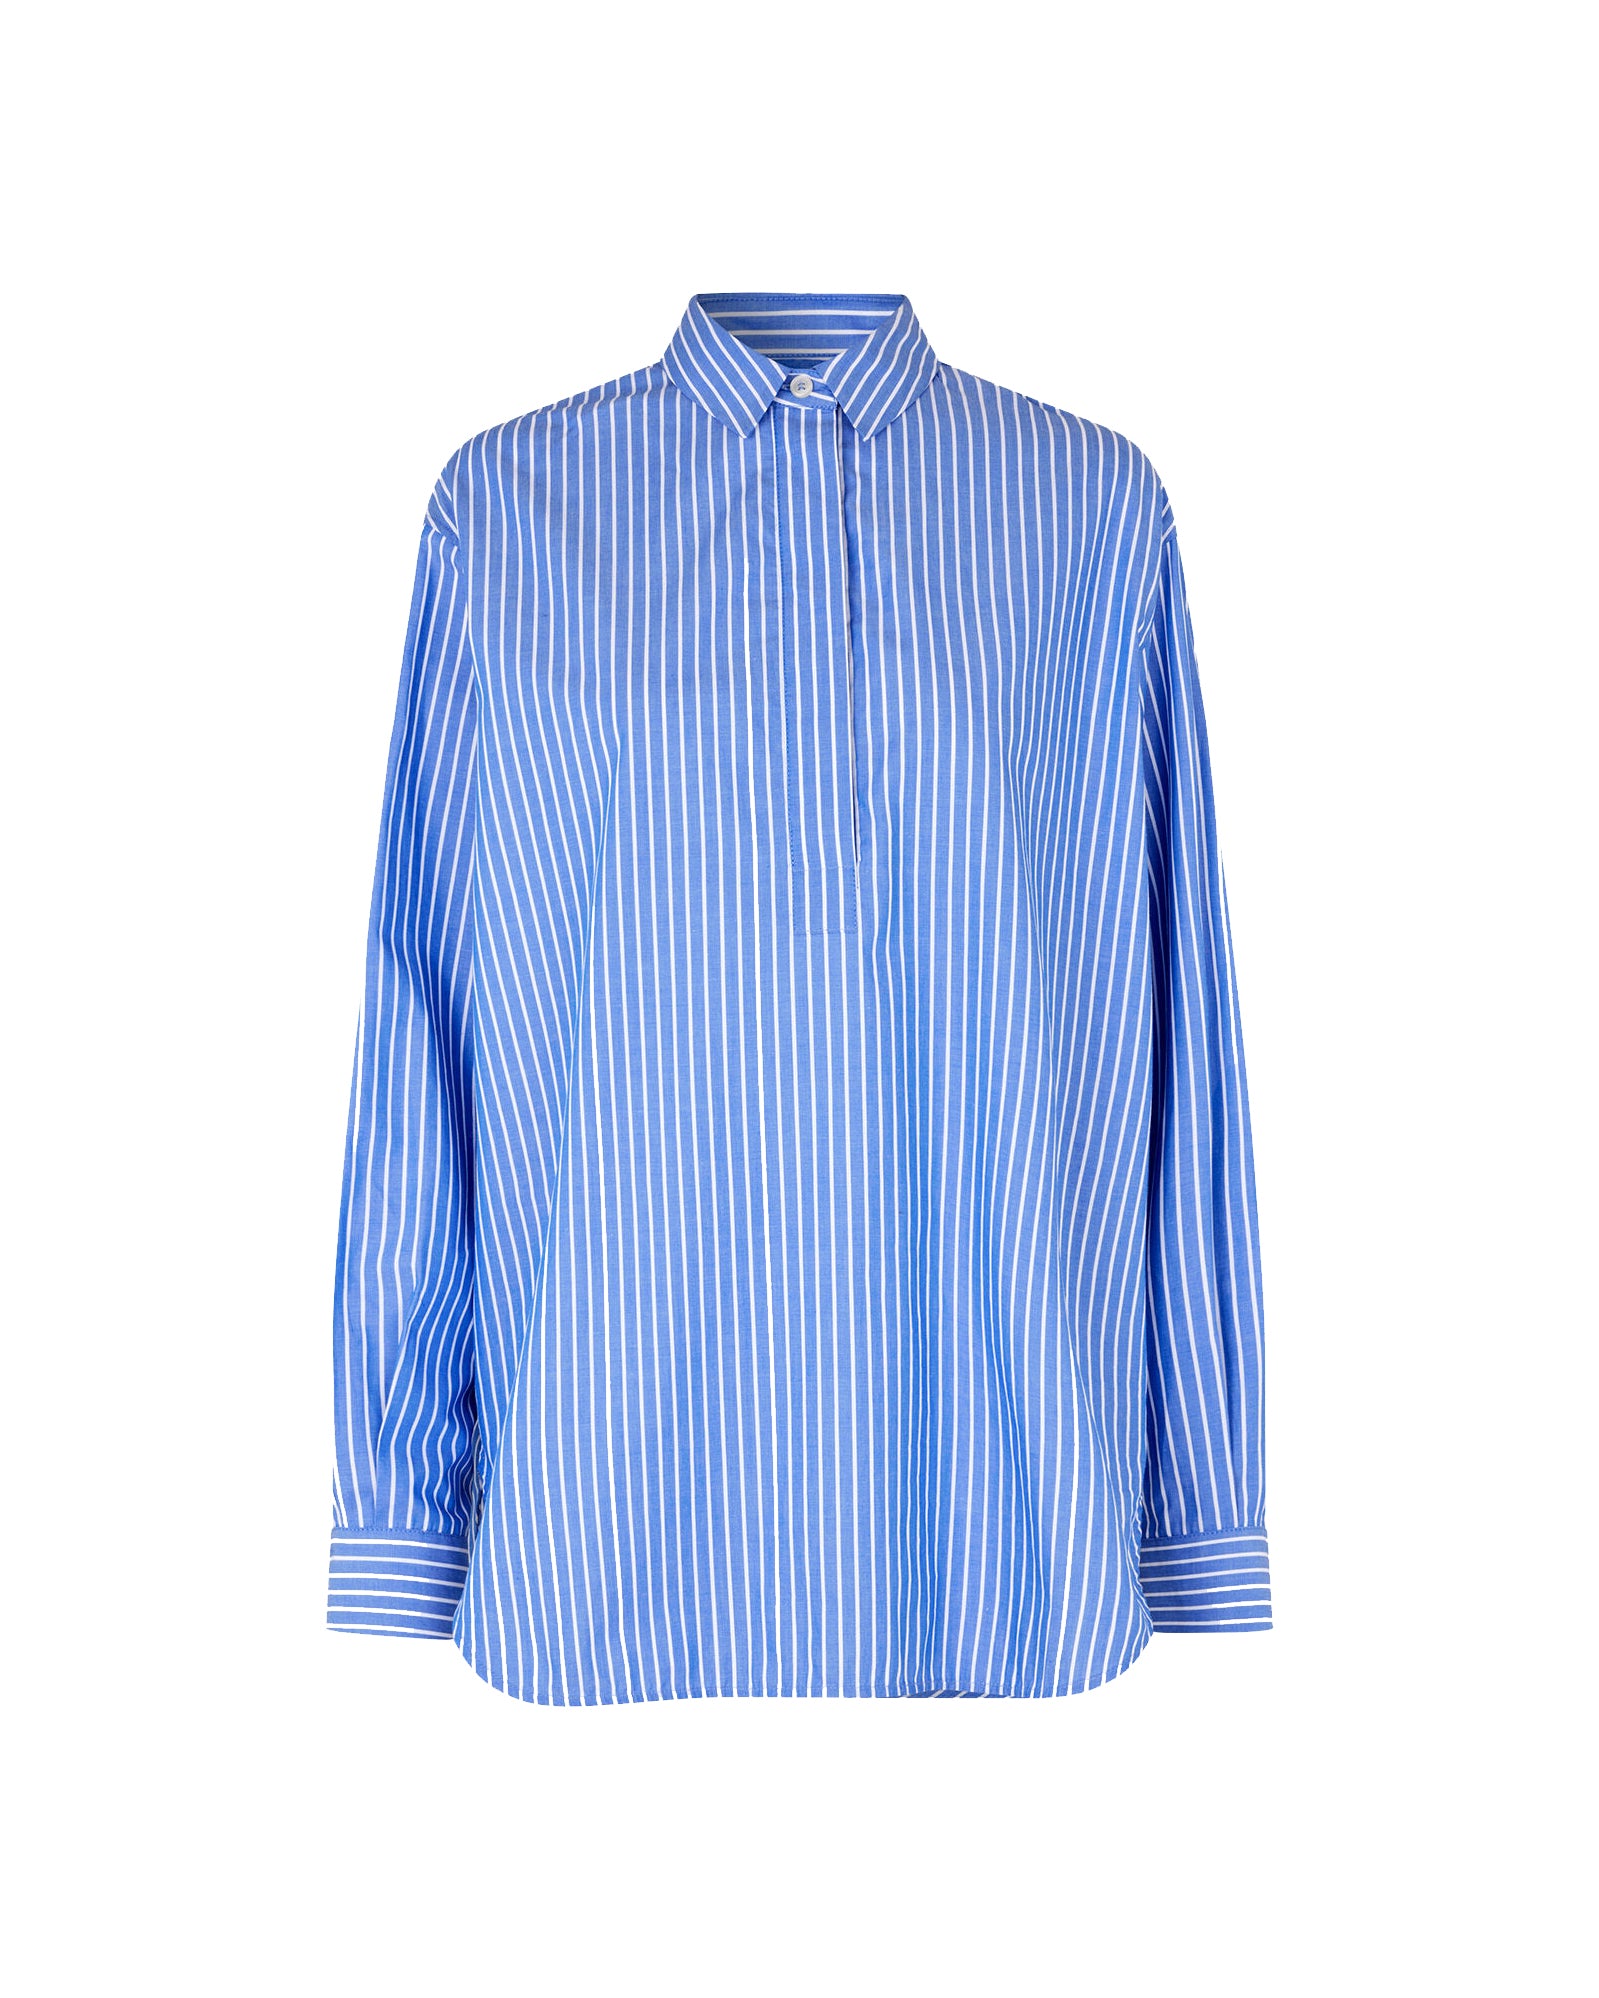 Alfrida HP 14765 Shirt - Blue White Stripes